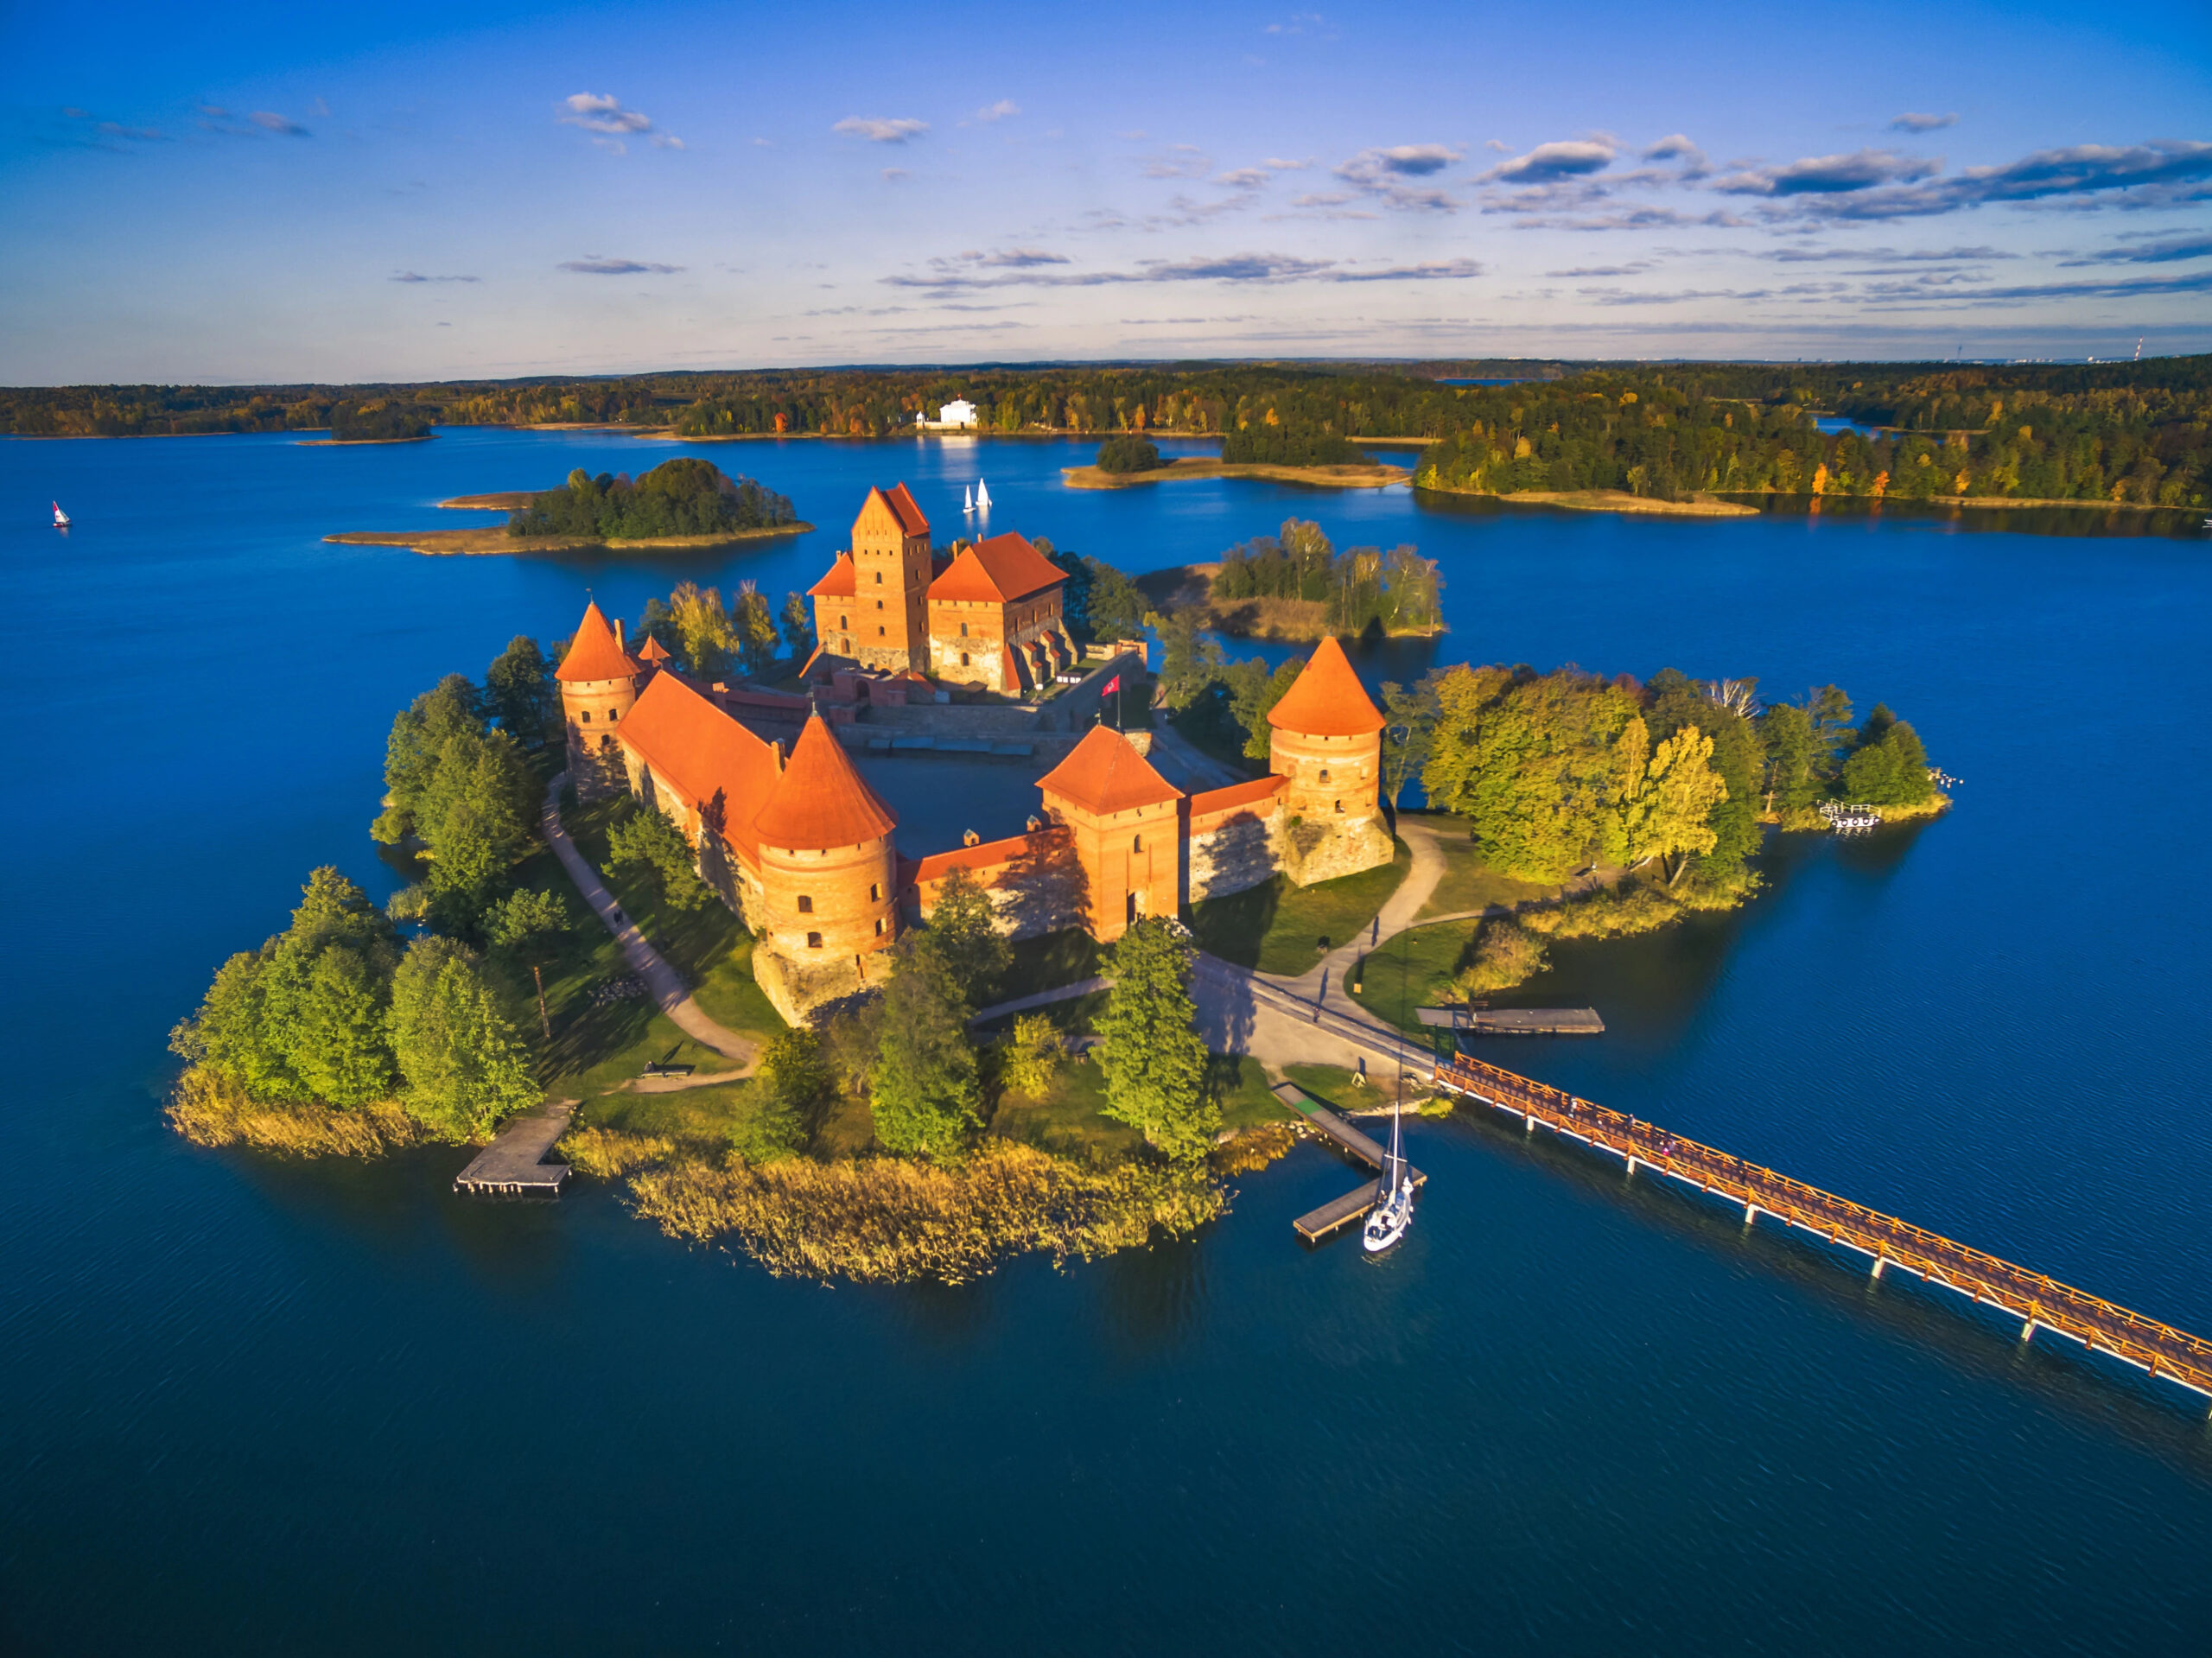 Venturing to Trakai Castle